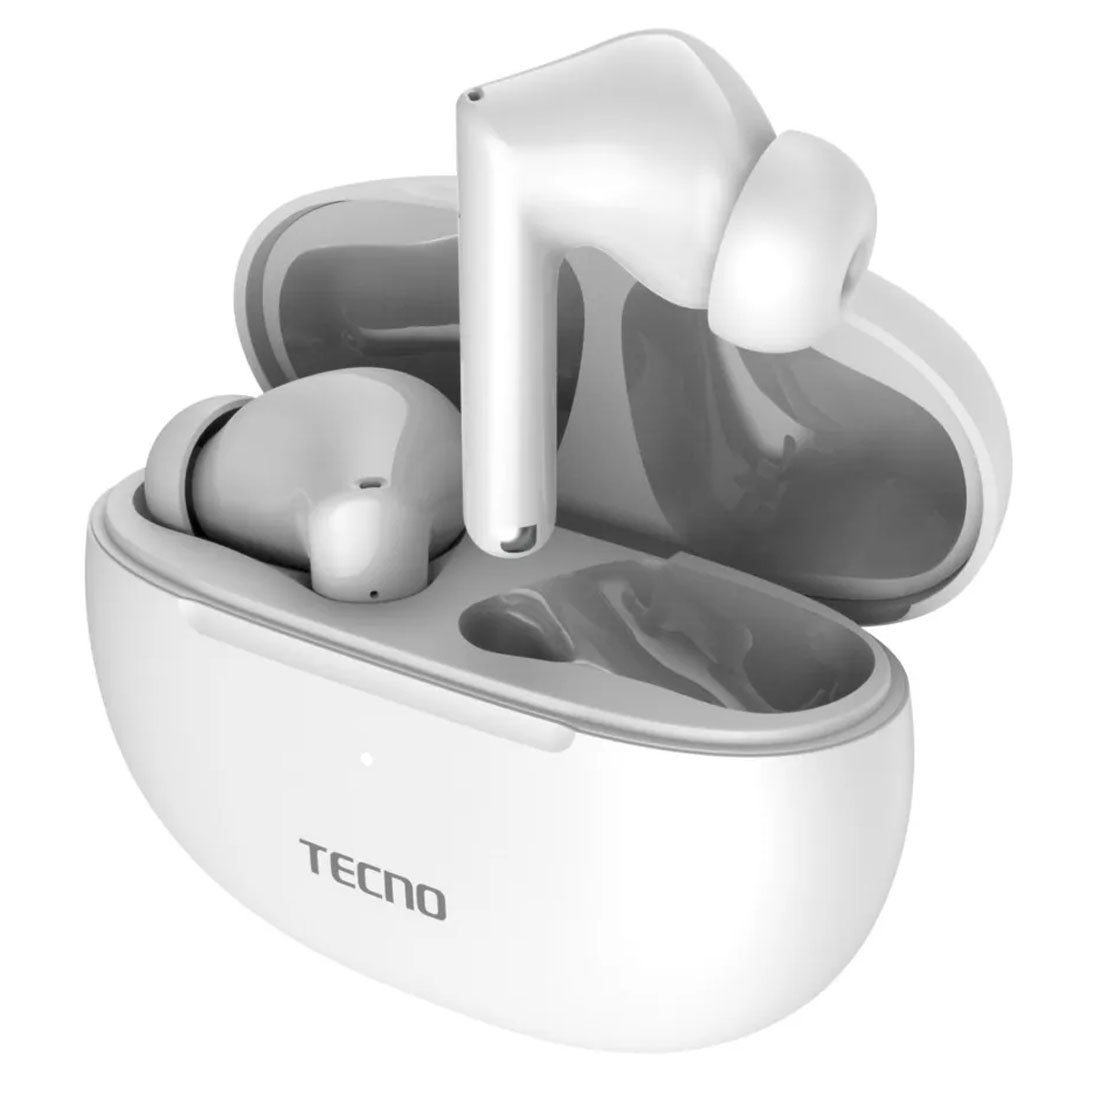 Гарнитура (наушники с микрофоном) беспроводная, TECNO Buds 3, цвет белый